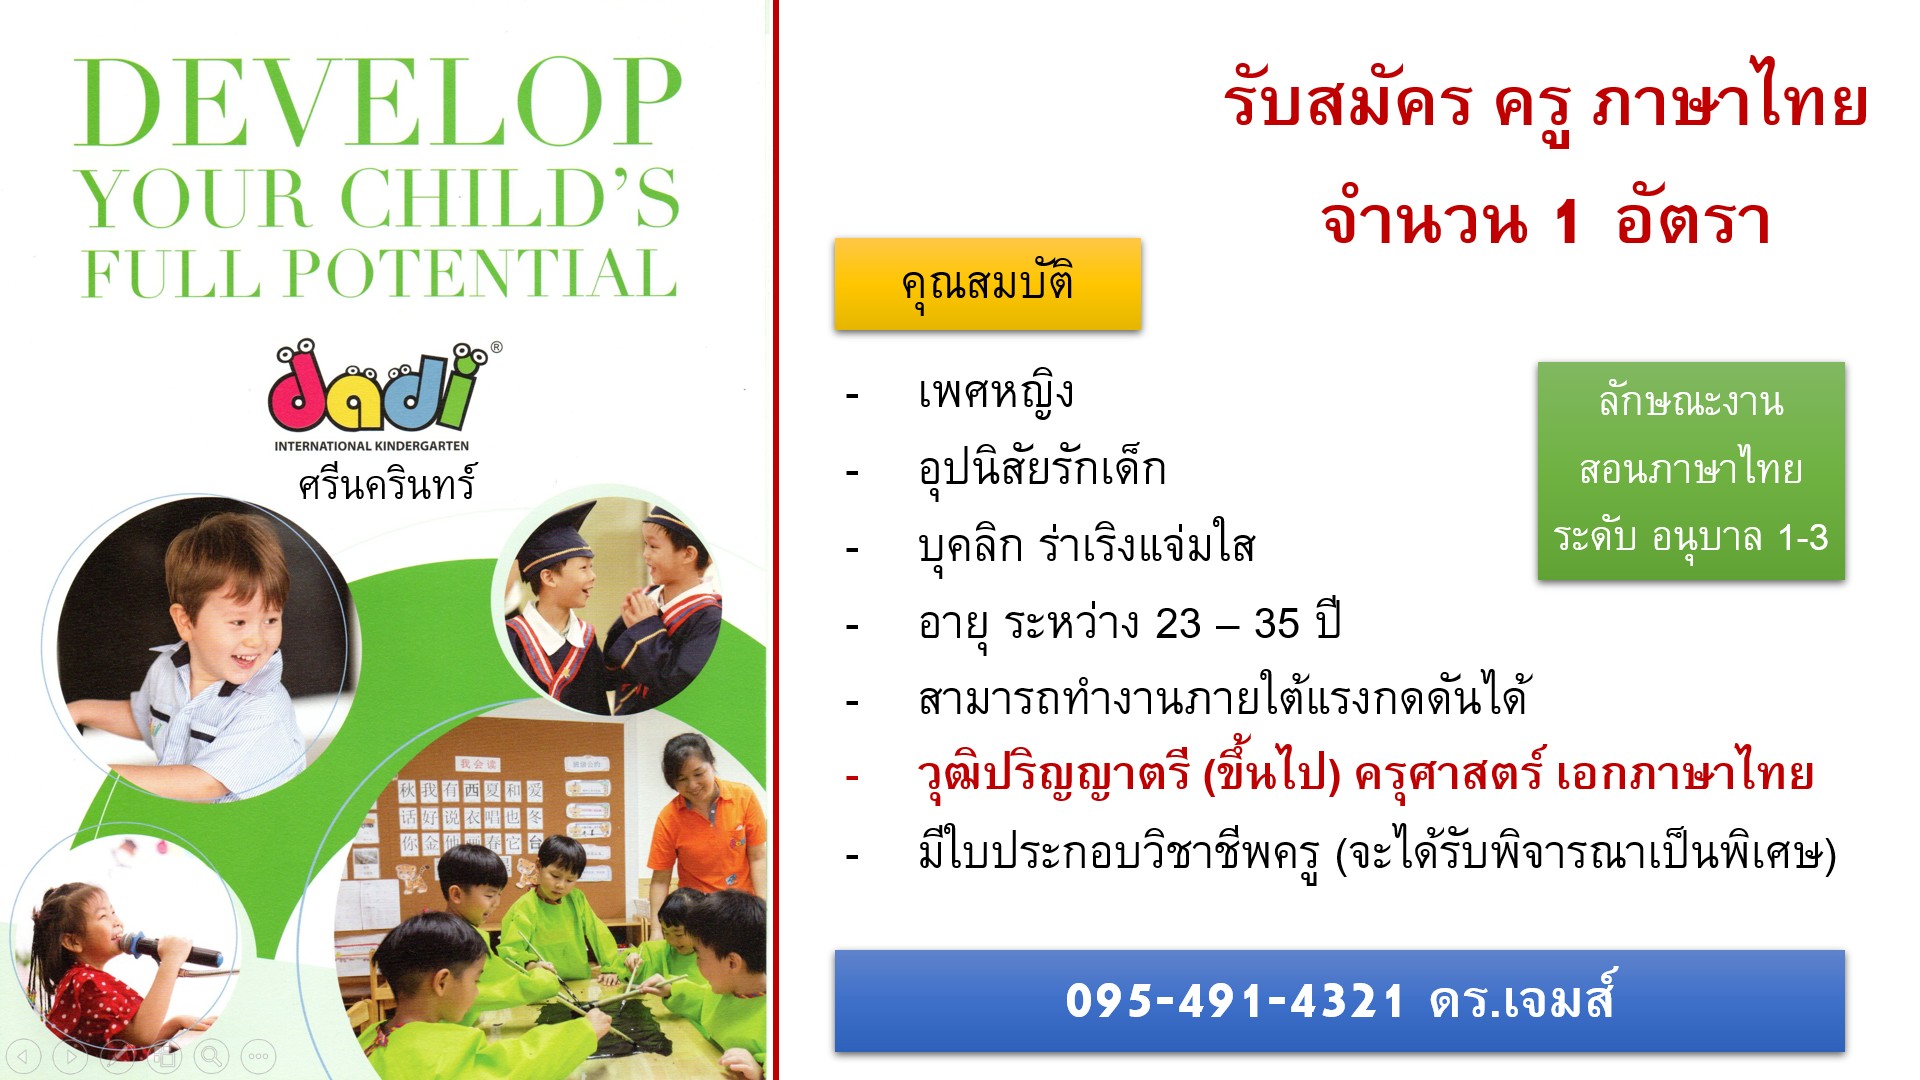 ประกาศ โรงเรียนนานาชาติรับสมัครครูภาษาไทย 